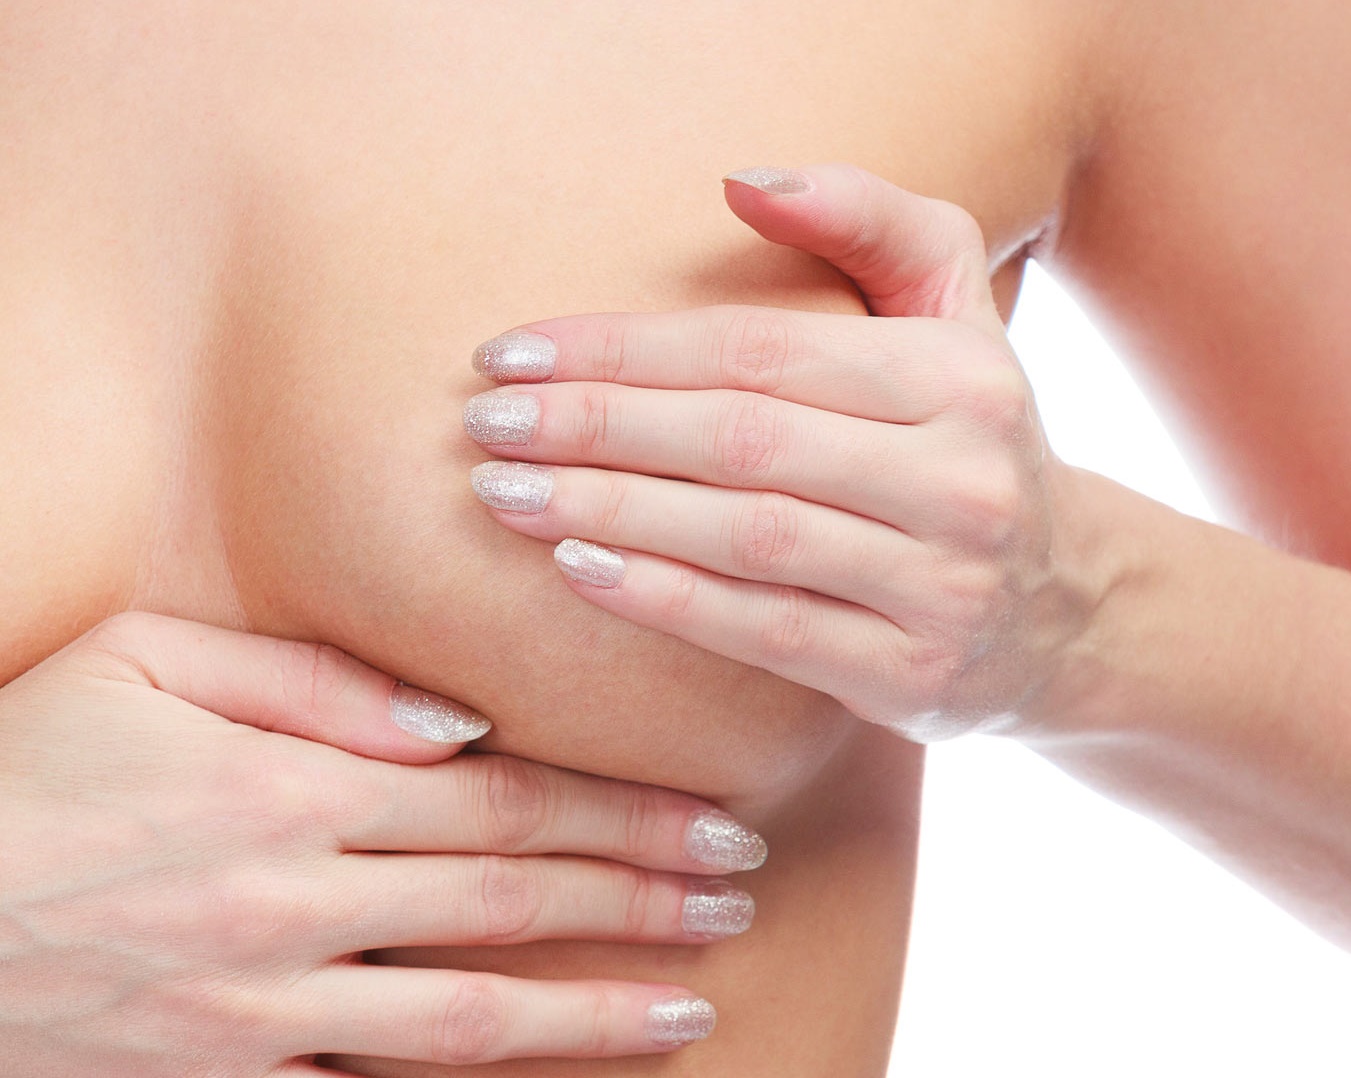 симптомы воспаления груди у женщин фото 70